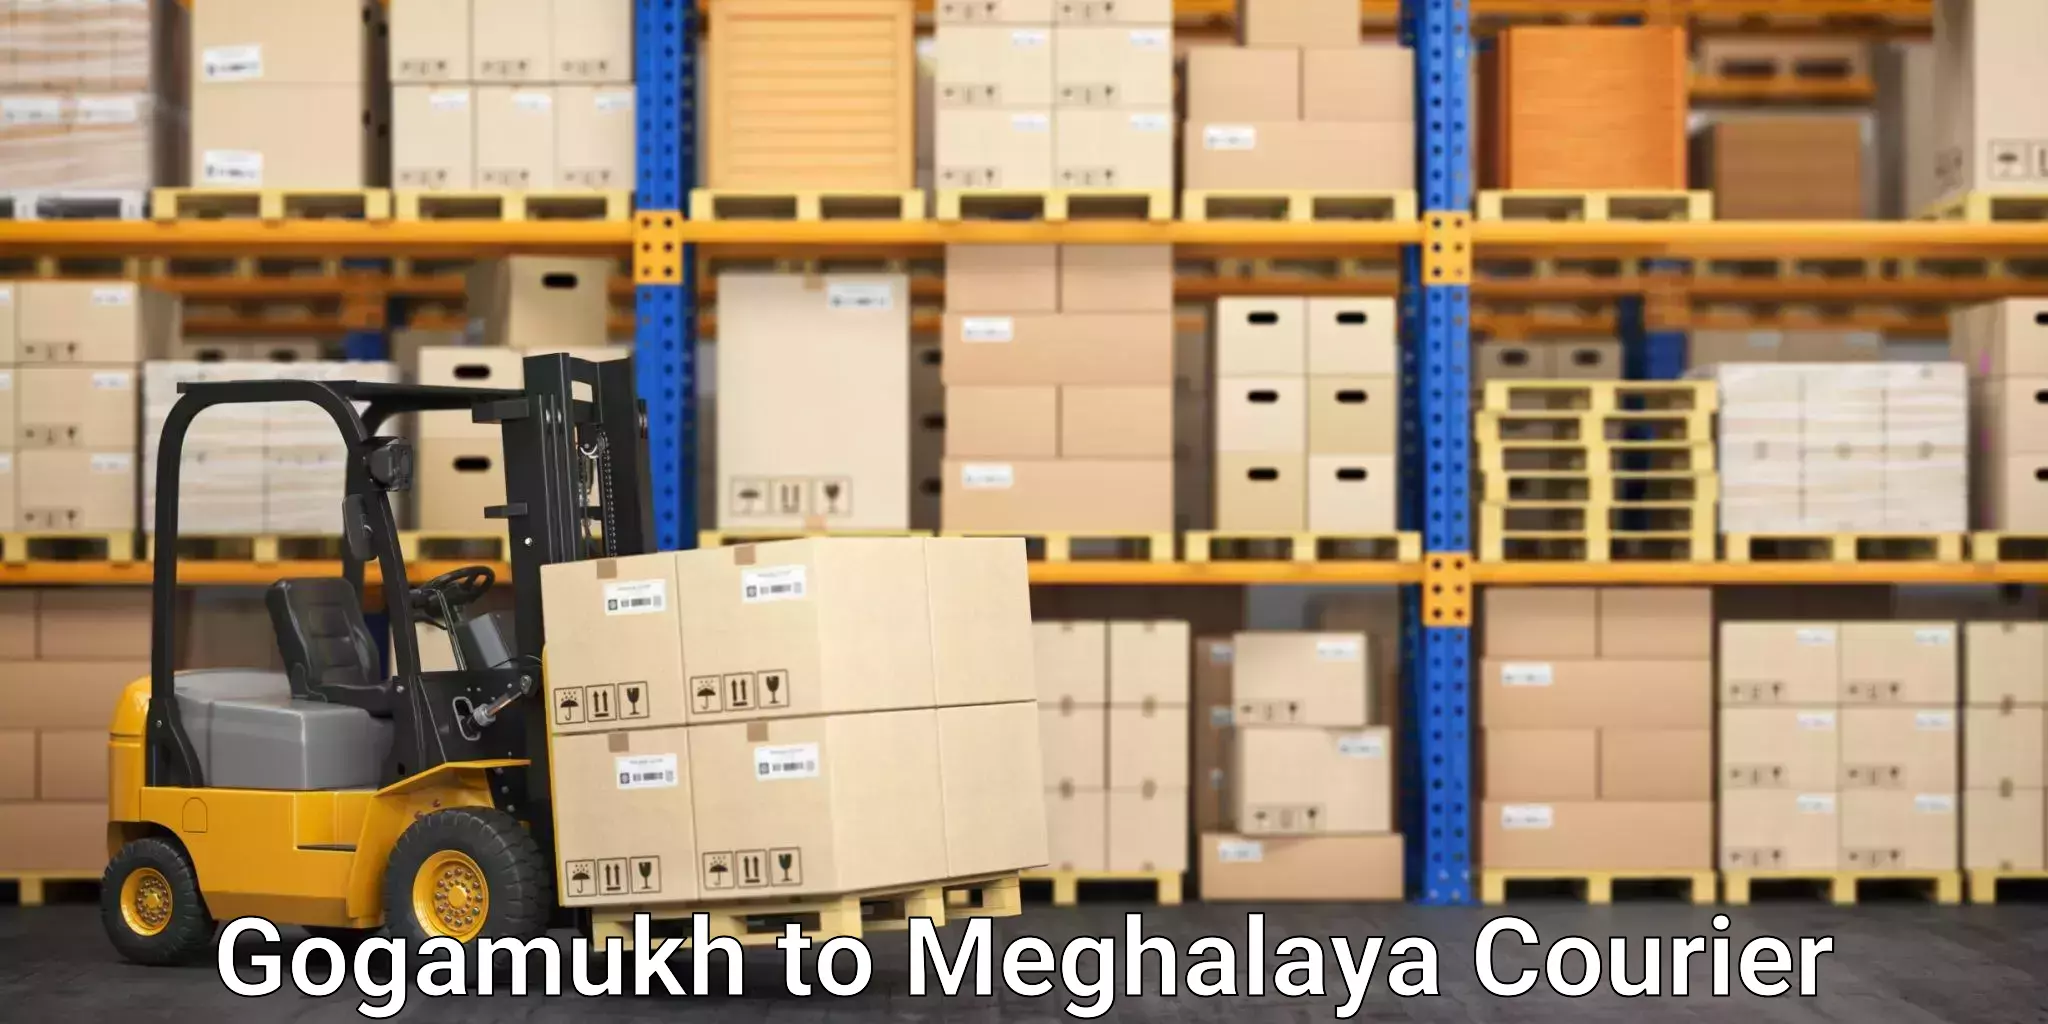 Urgent courier needs Gogamukh to Meghalaya